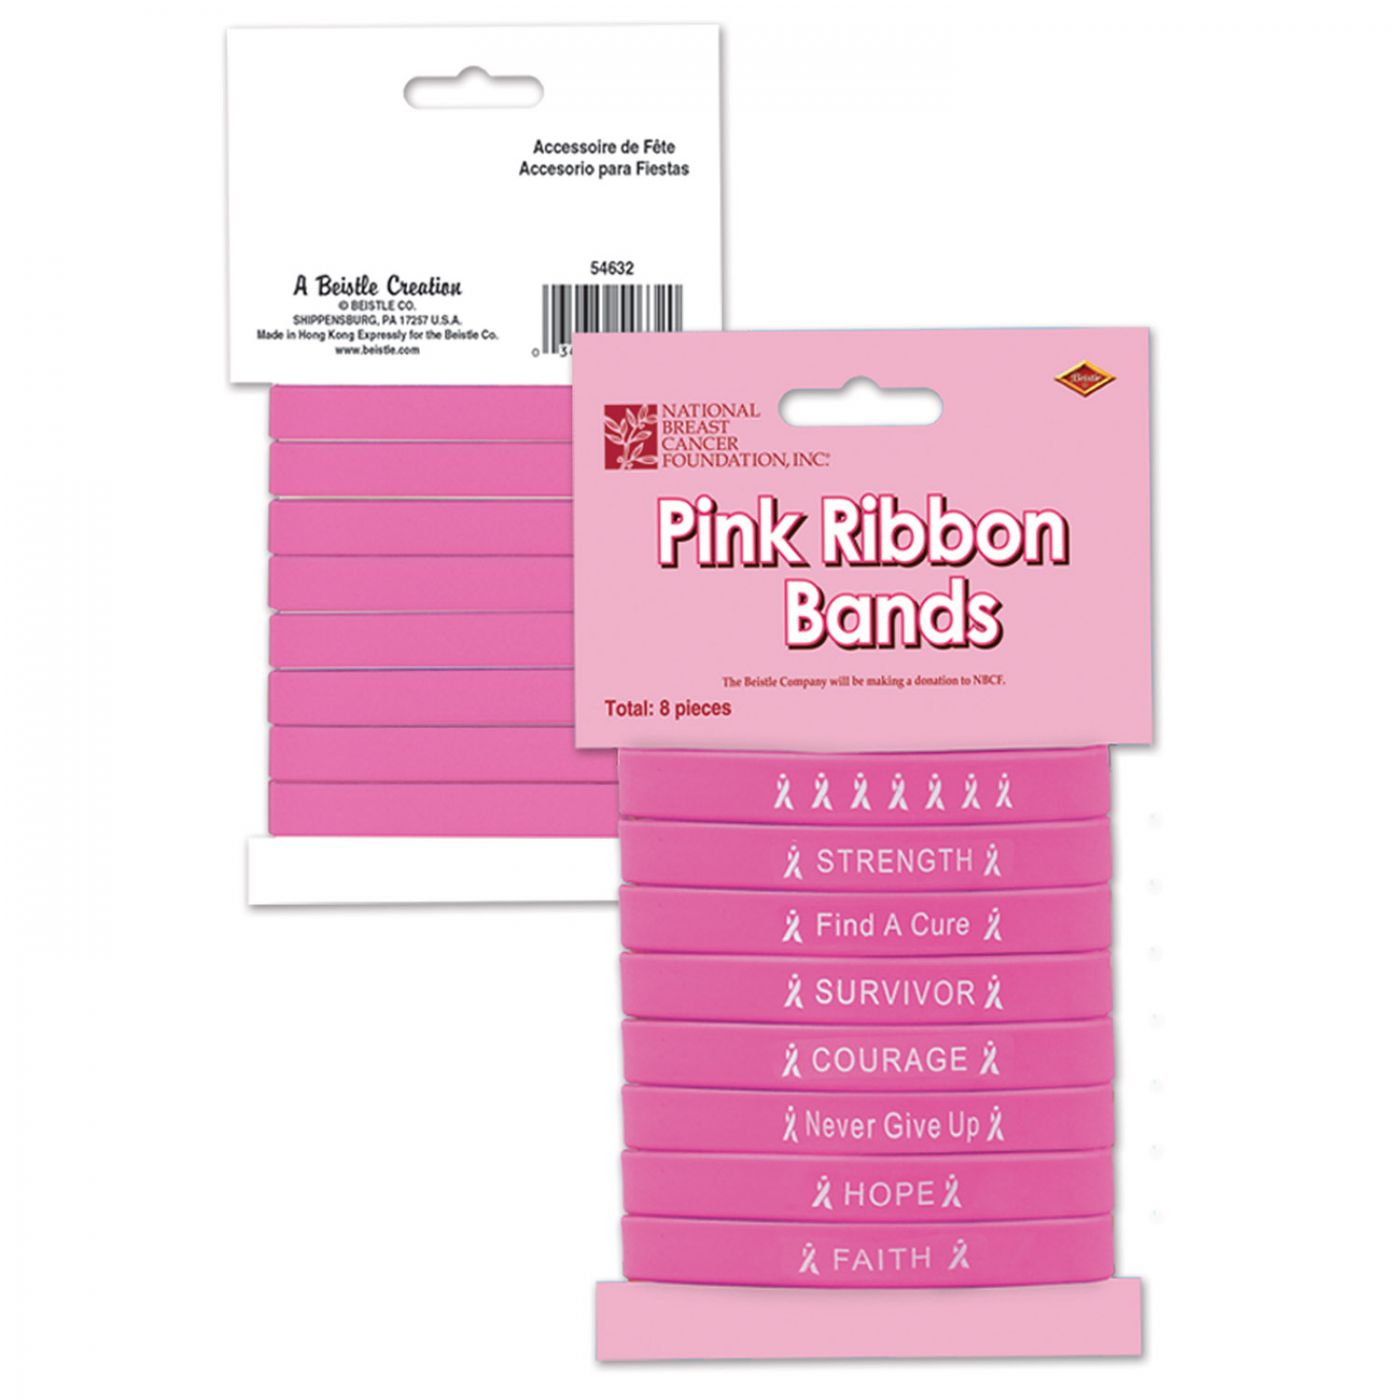 Pink Ribbon Bands image